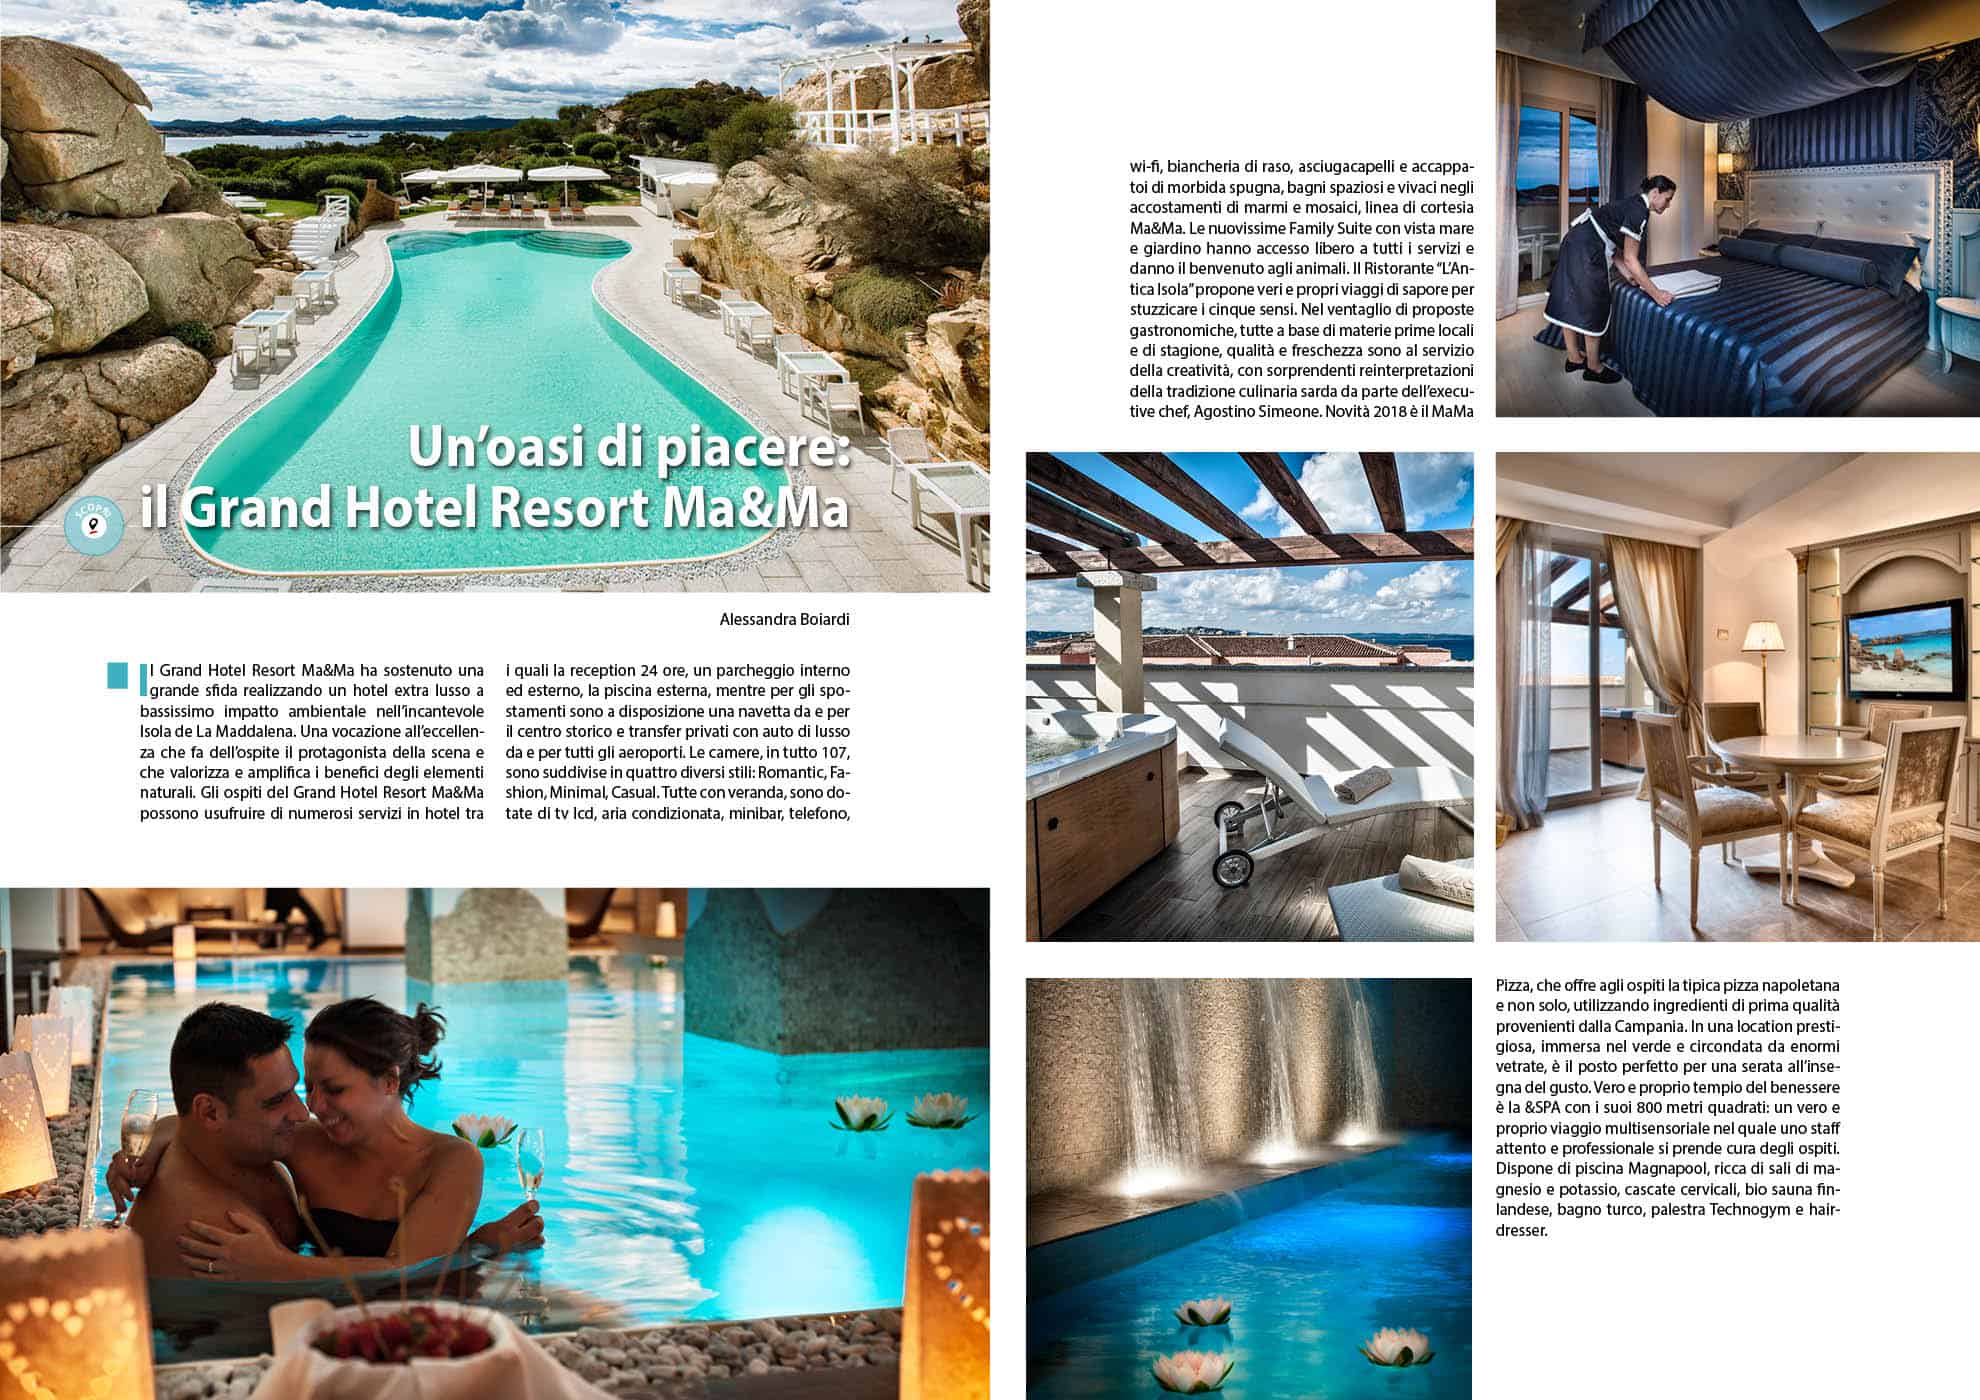 e-borghi travel 4: Mare e borghi - Un’oasi di piacere: il Grand Hotel Resort Ma&Ma